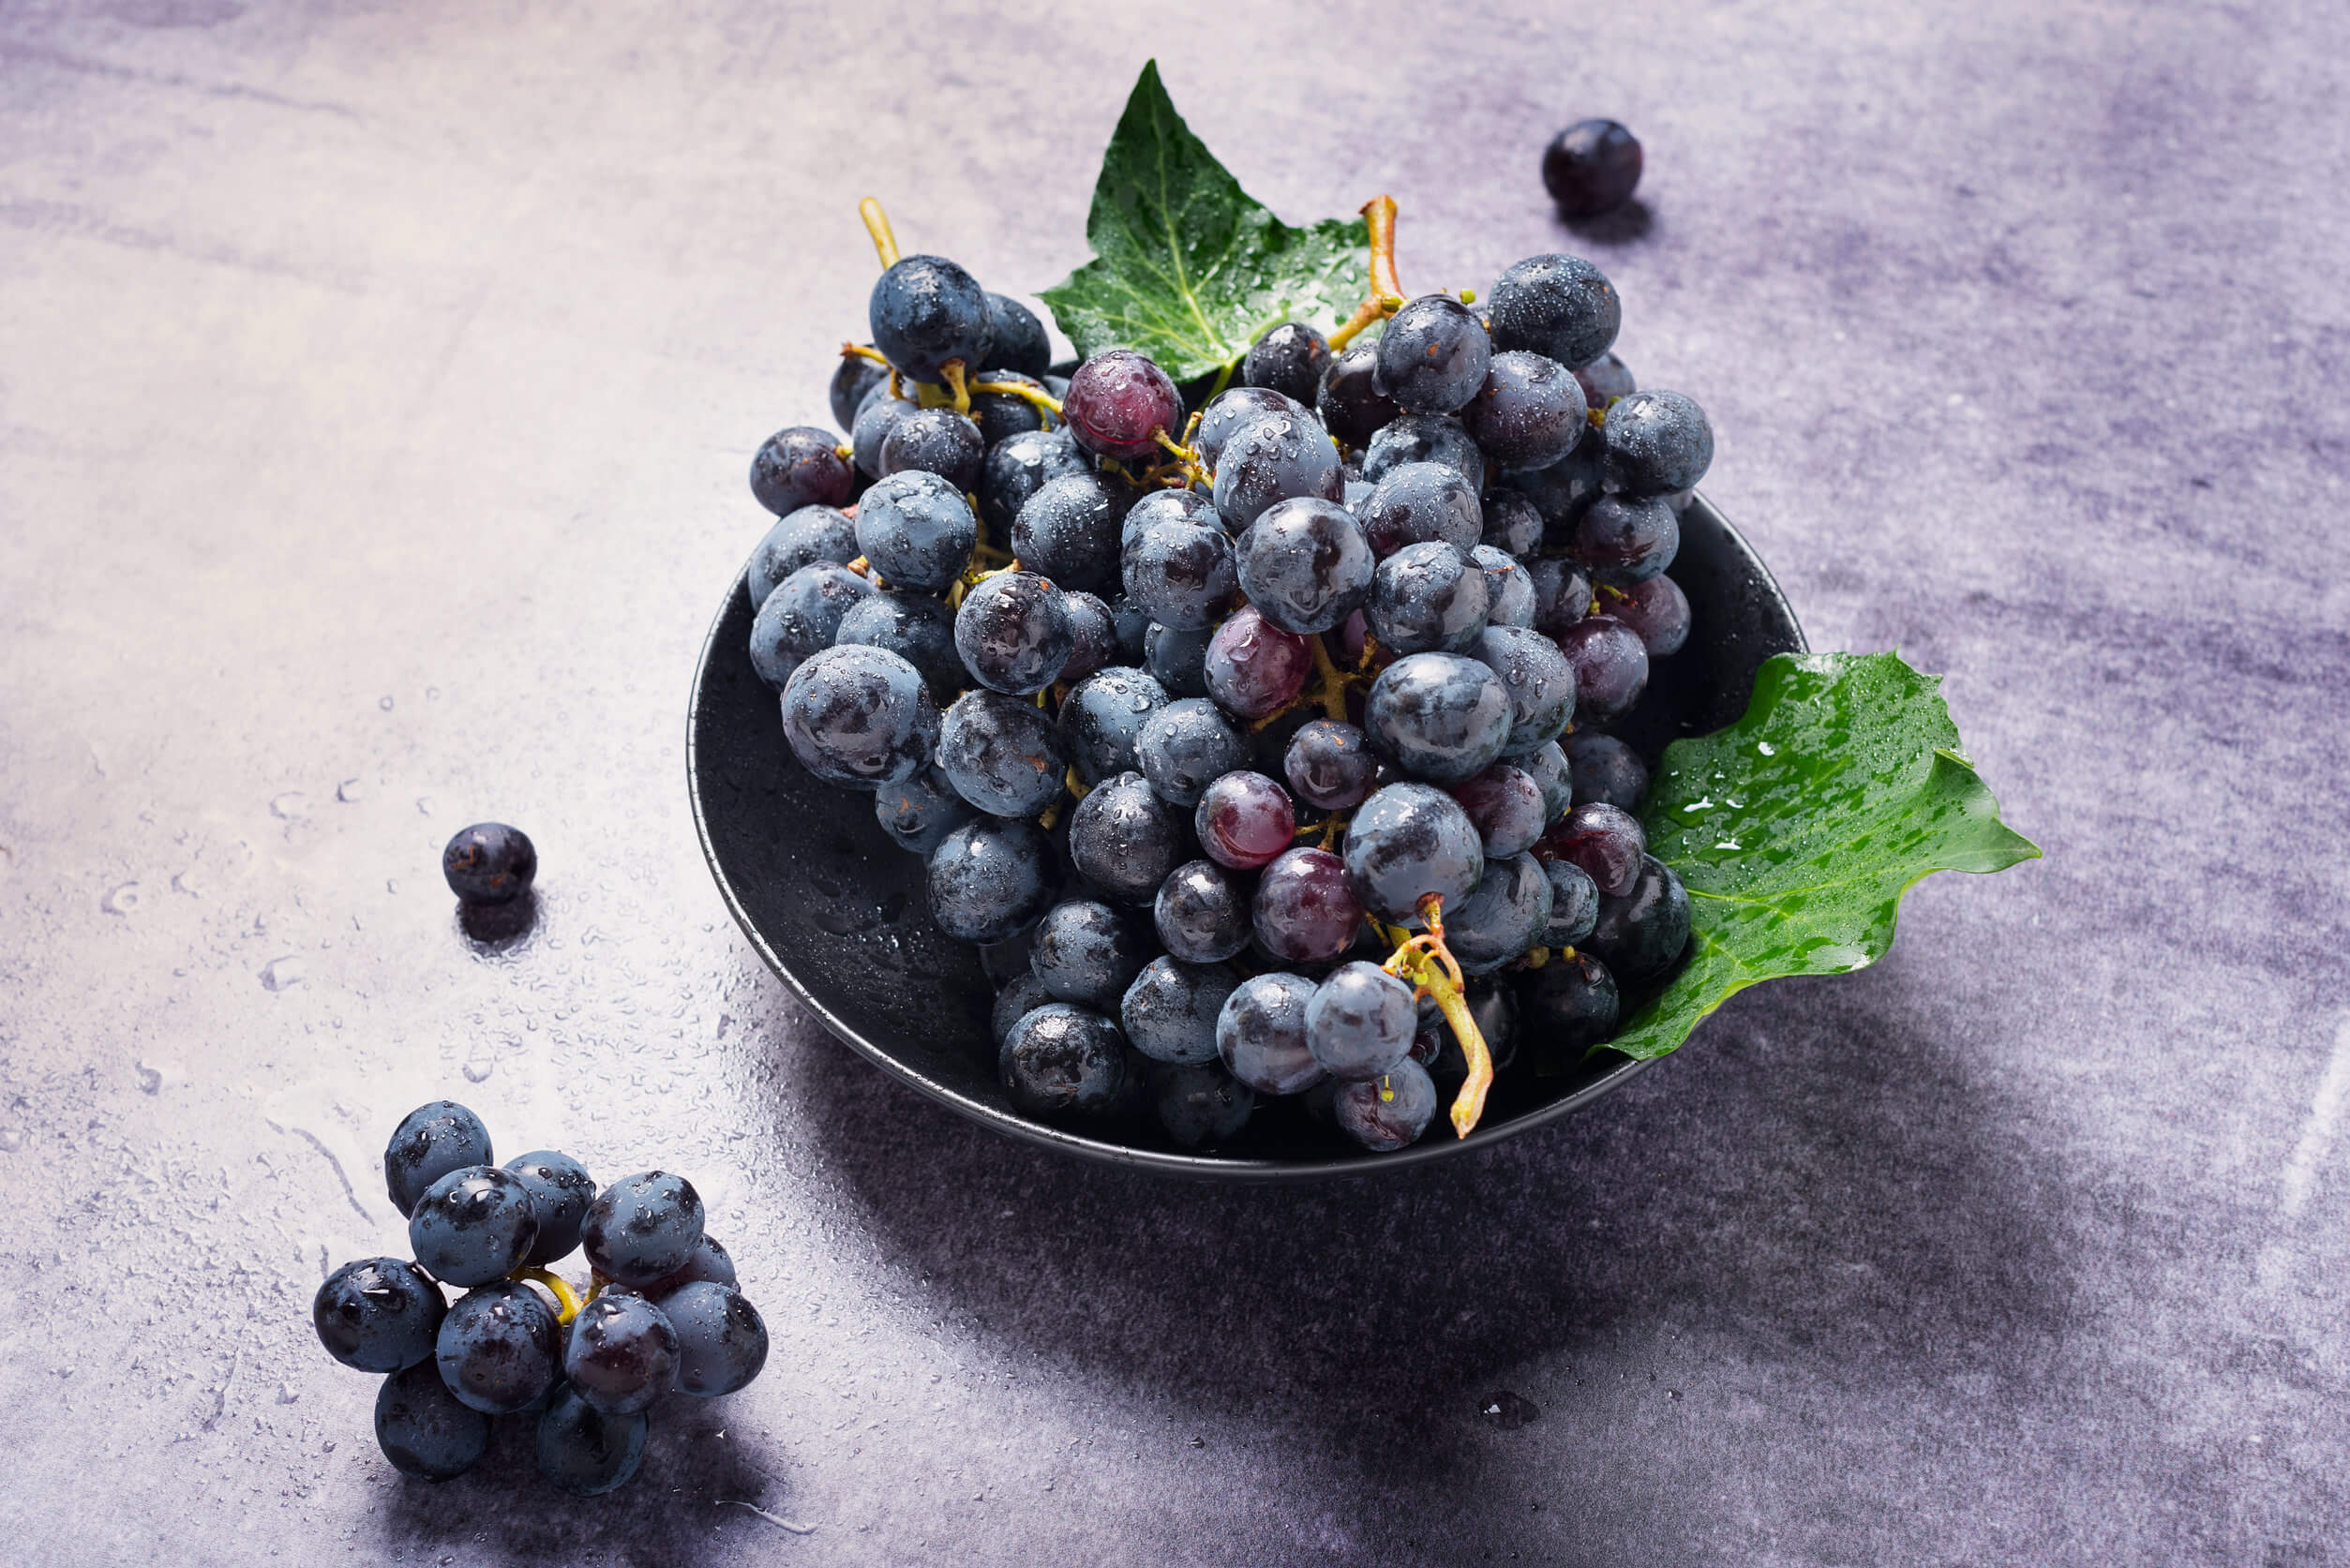 Las uvas moradas contribuyen a la salud hepática y renal